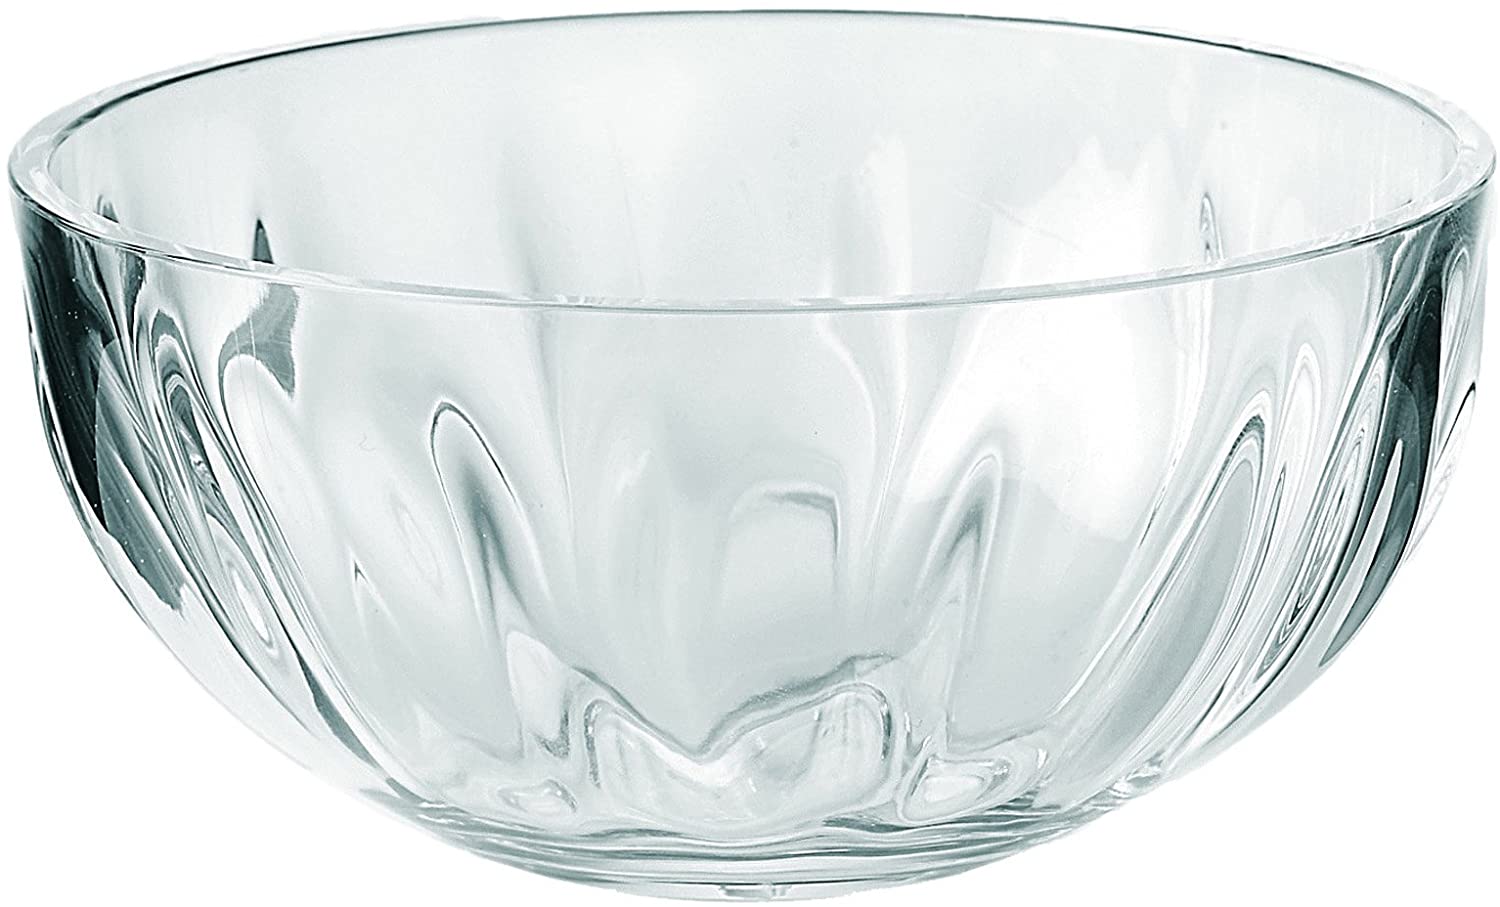 Guzzini Aqua Serving Bowl, Clear Acrylic, 9 inch